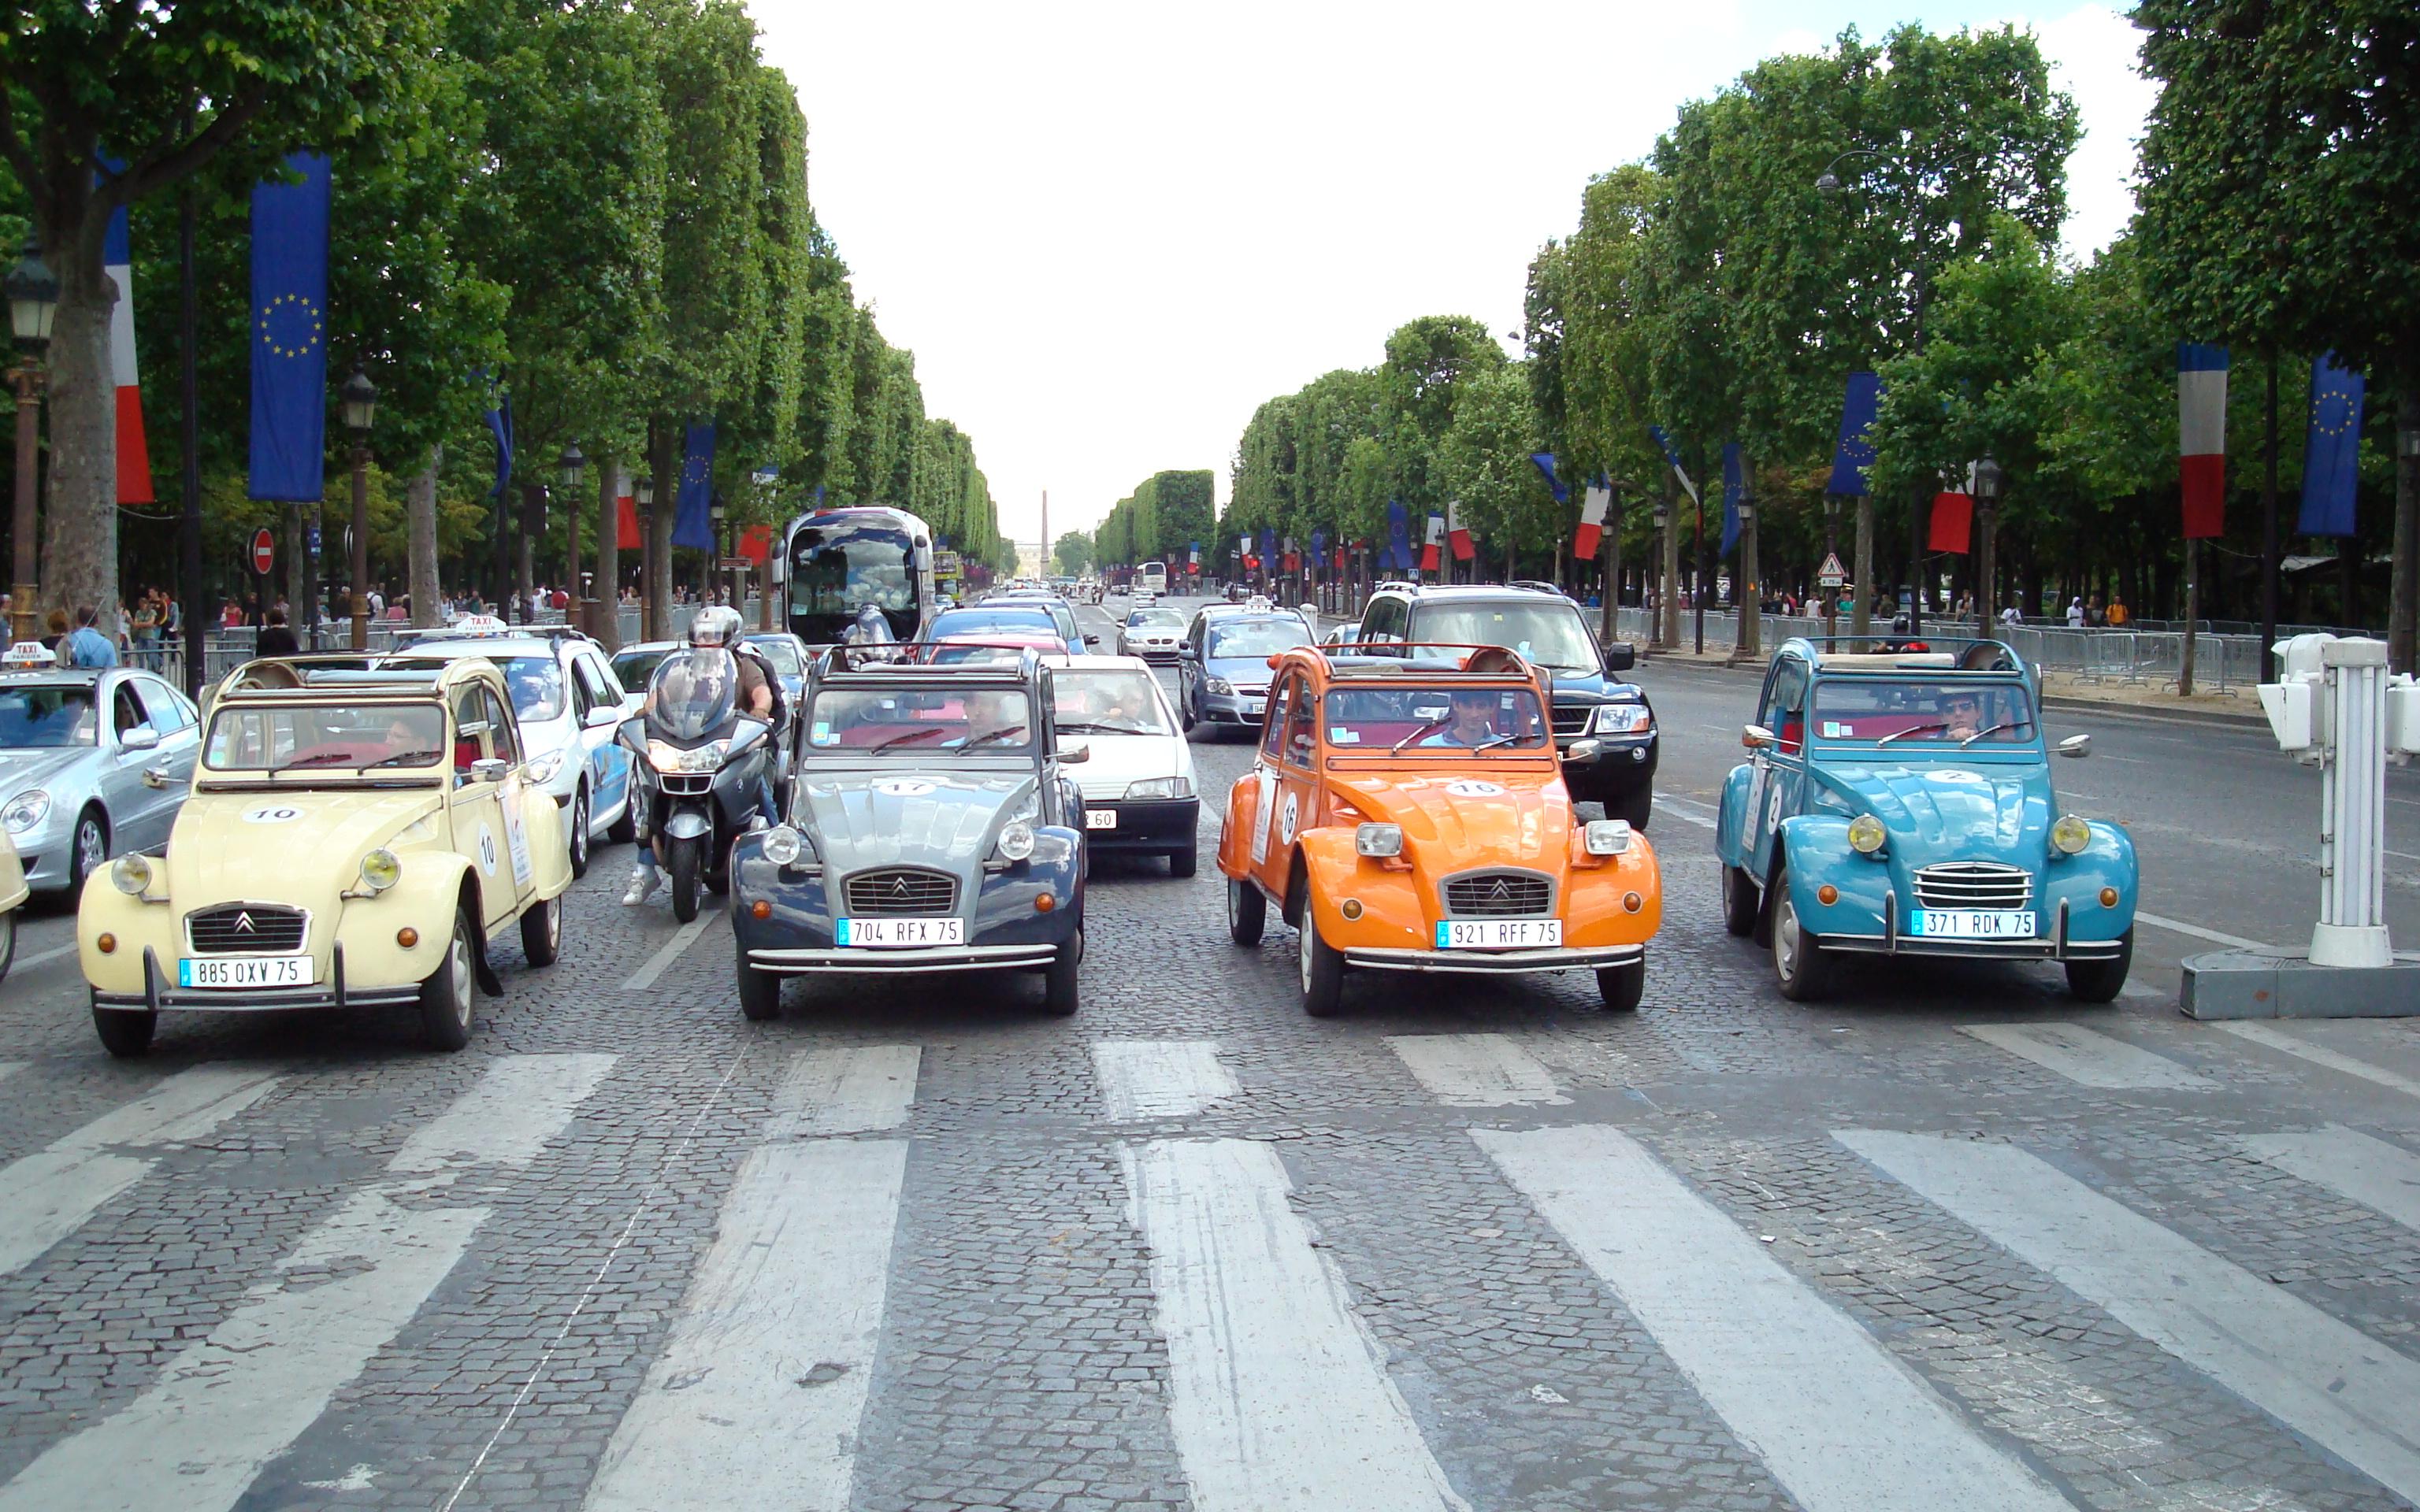 Экскурсия по Парижу на Citroën 2CV — 45 минут